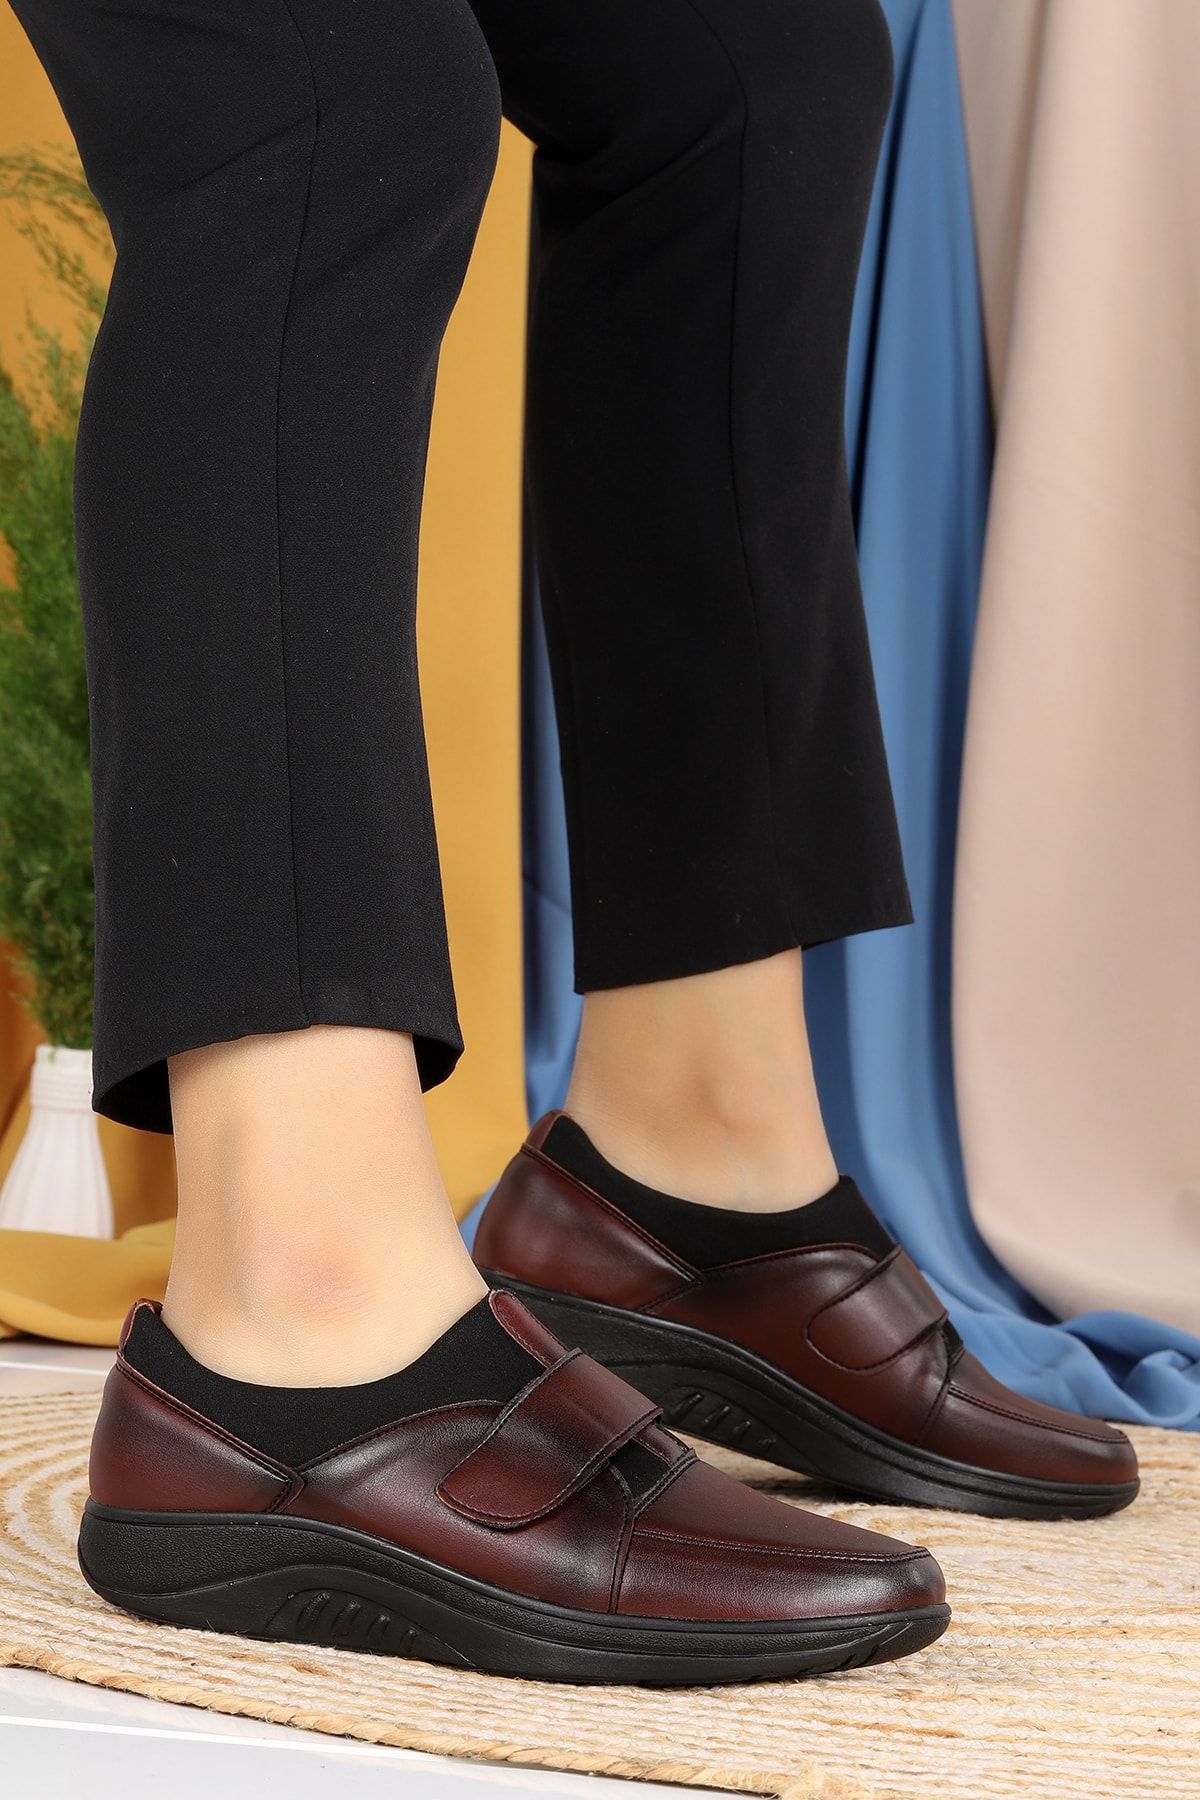 WOGGO 701 Rahat Konfor Özel Topuk Jeli Kadın Günlük Ayakkabı